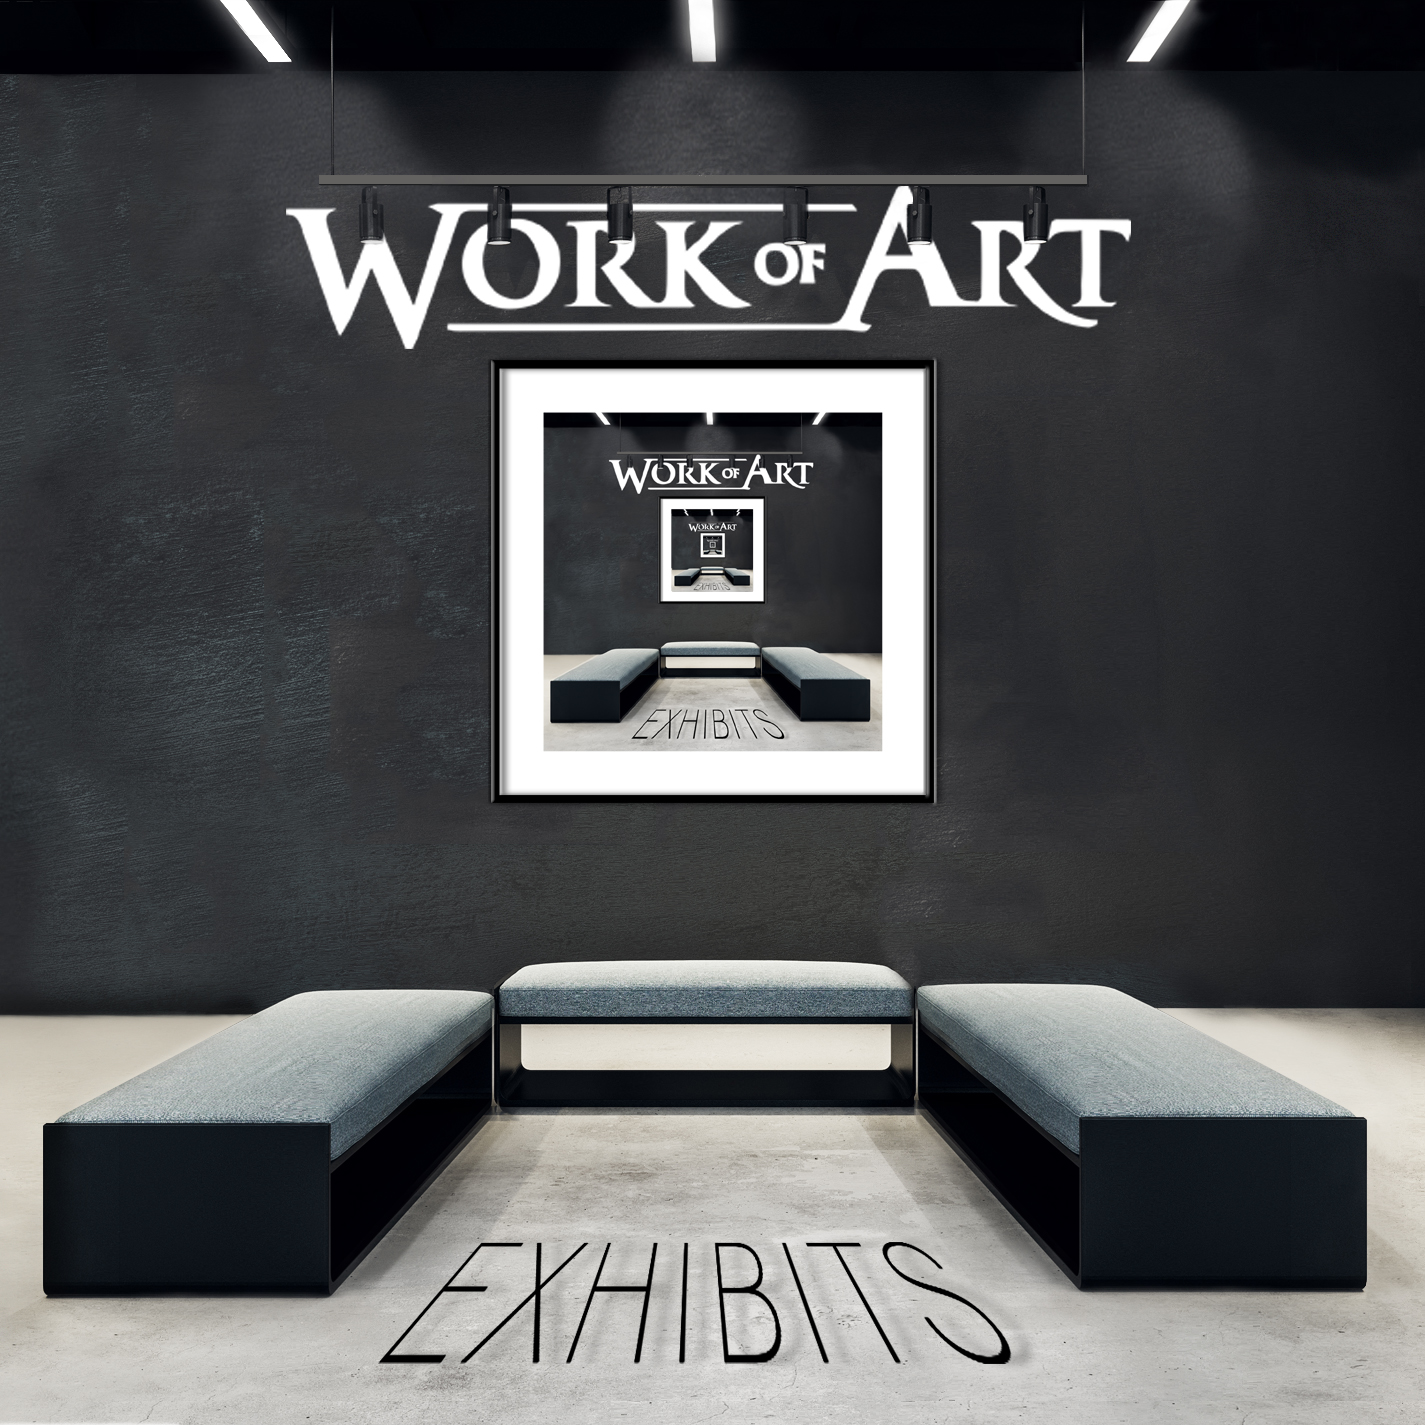 Work Of Art (S) – Exhibits